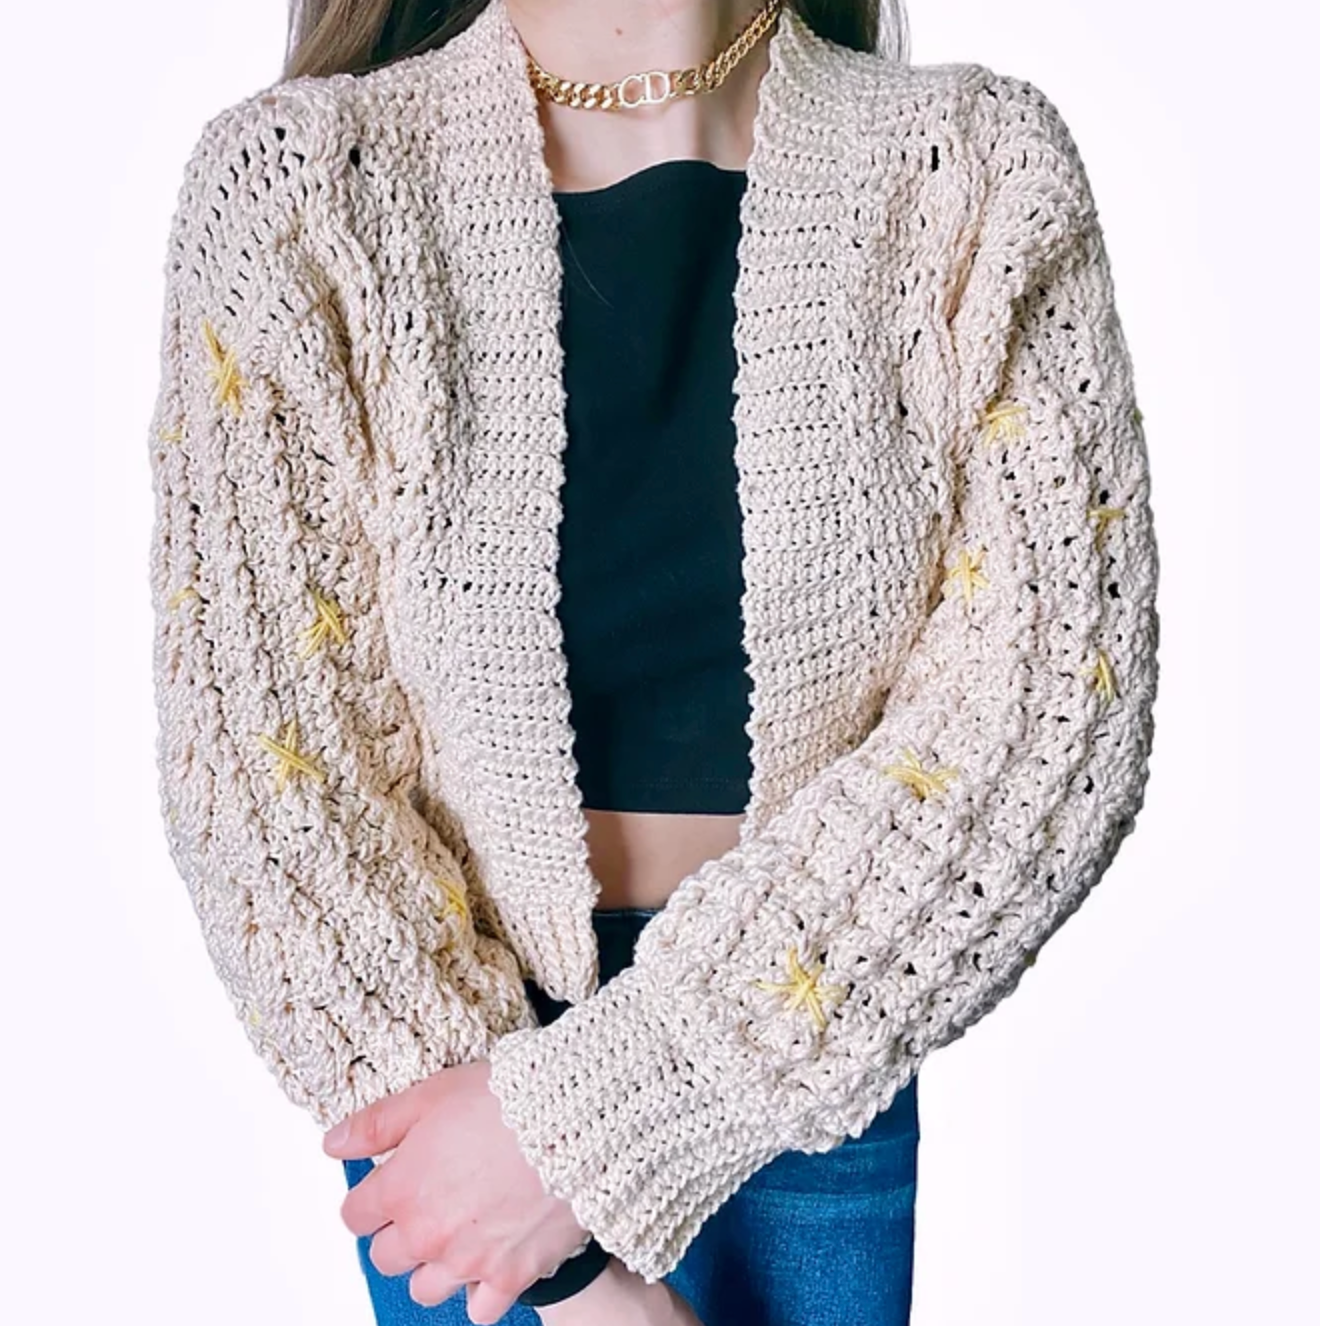 Malmo Sweater Crochet Pattern